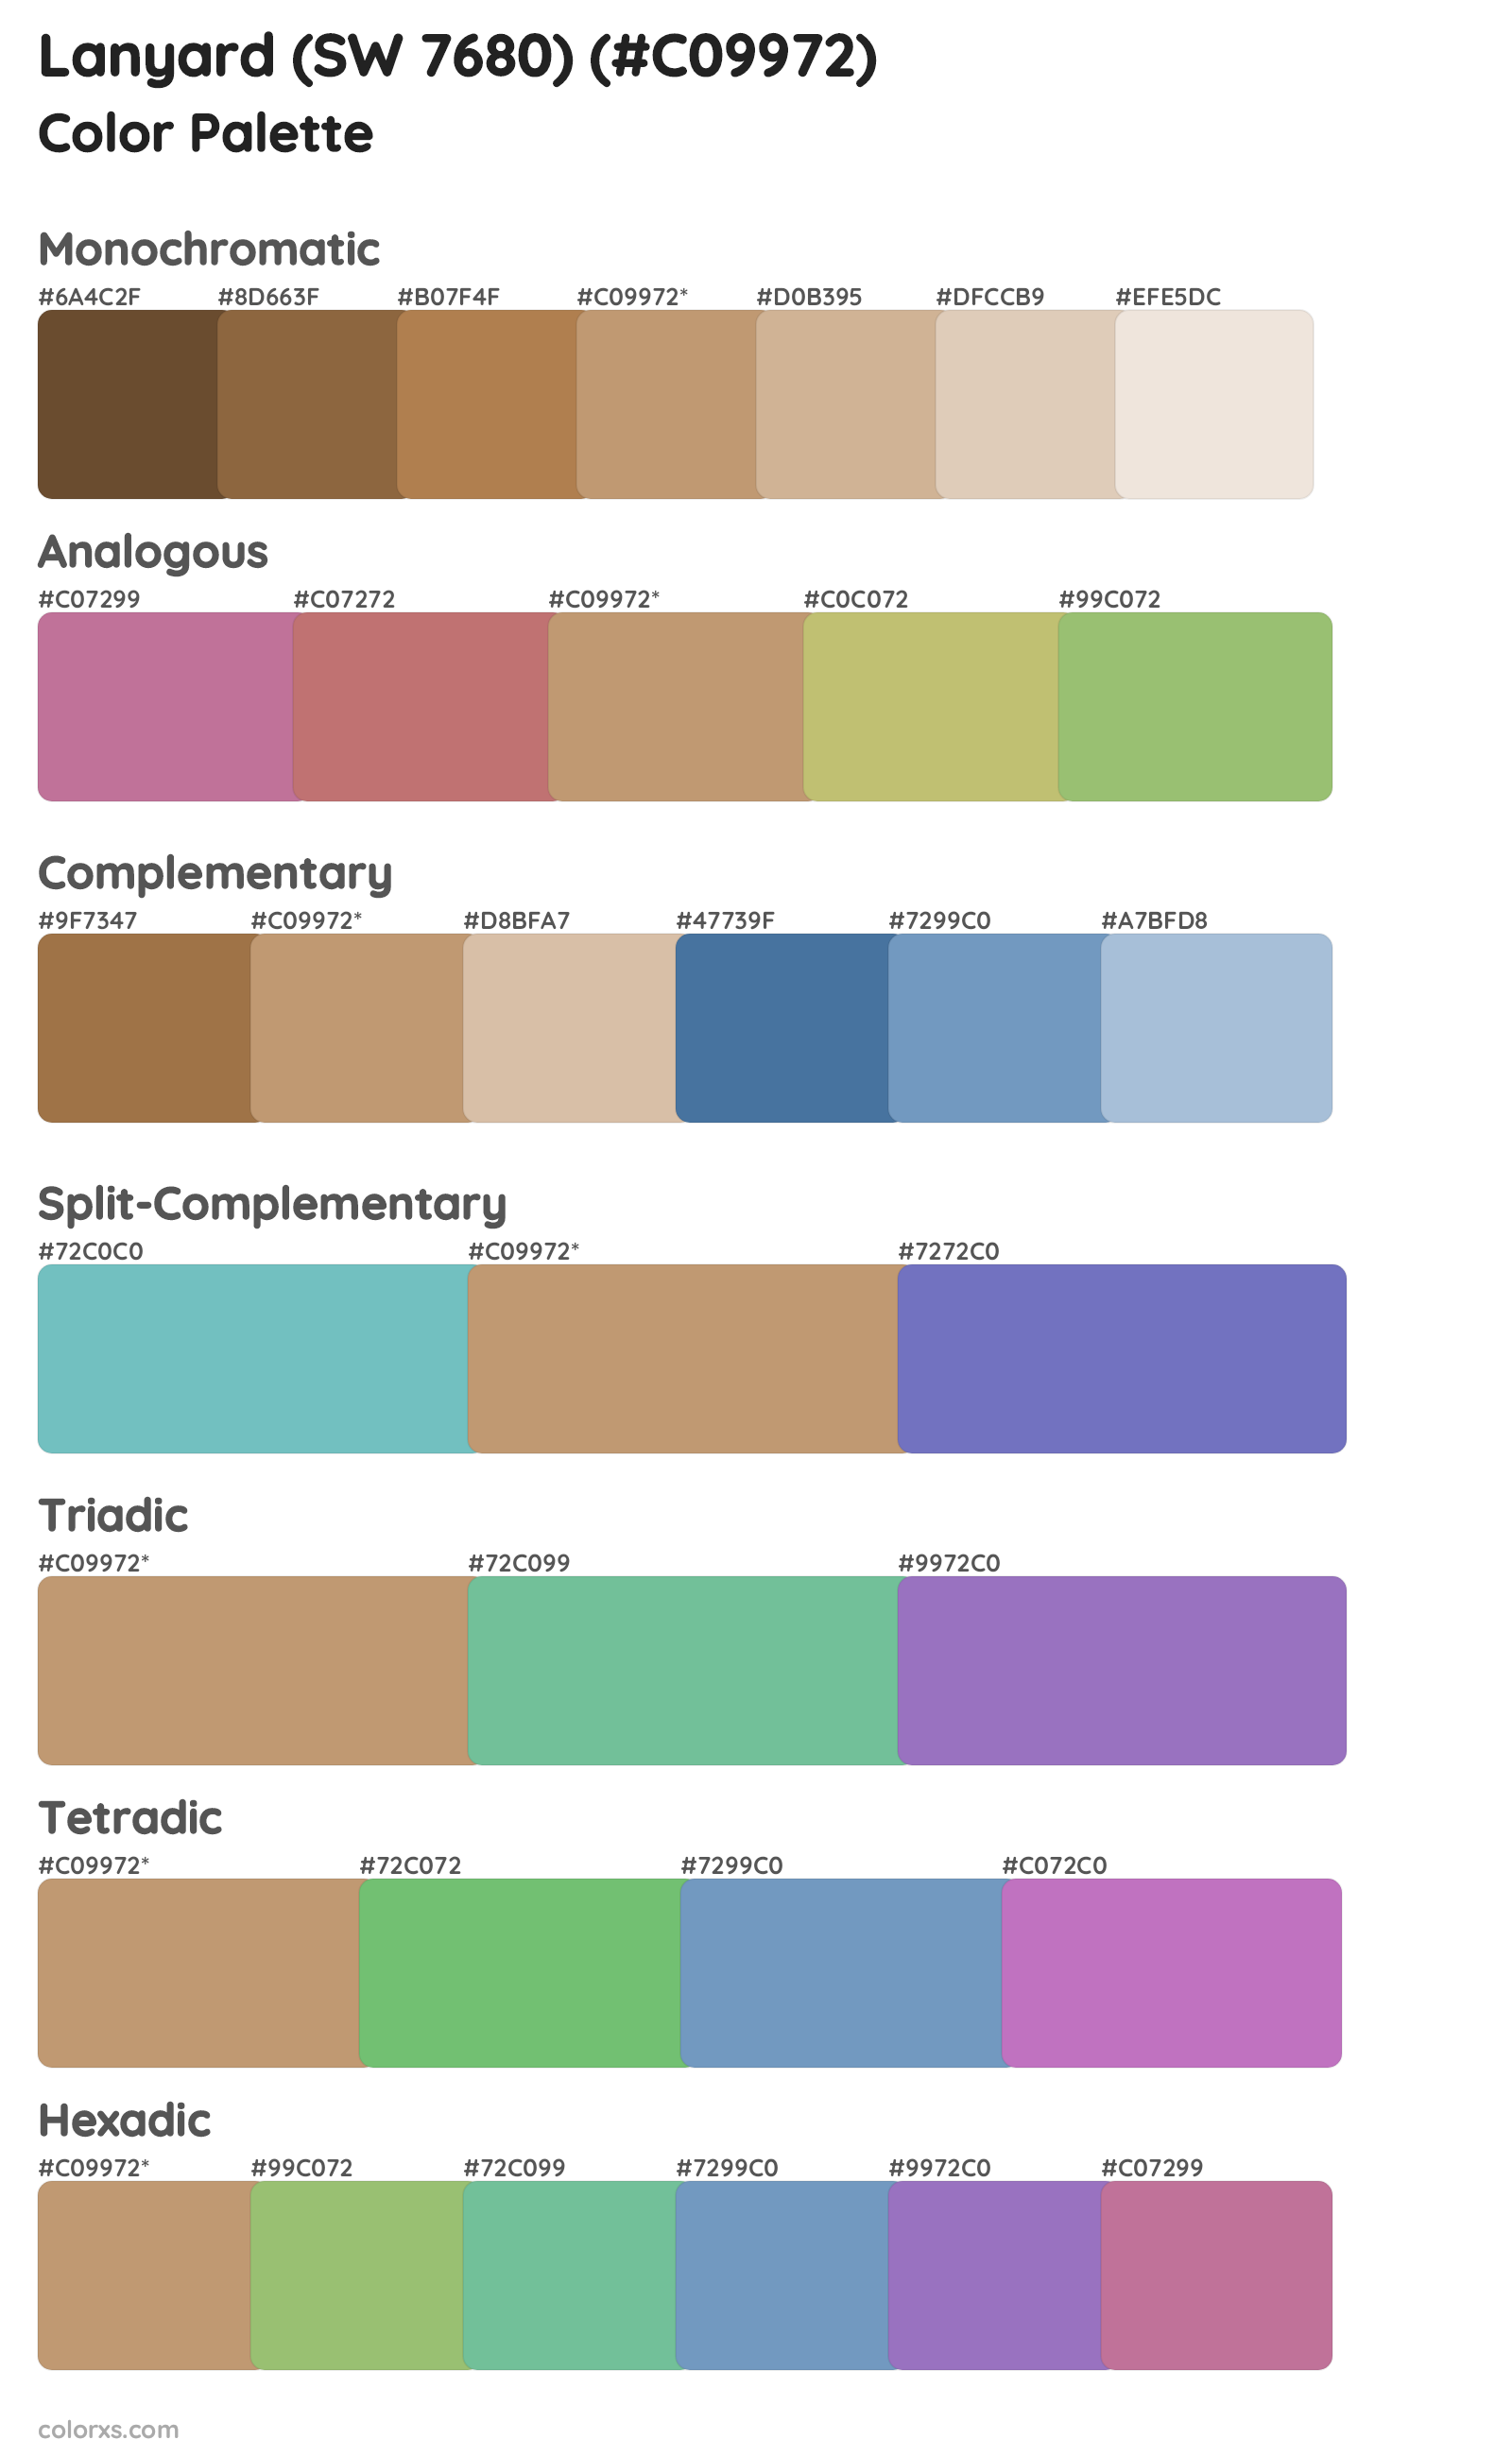 Lanyard (SW 7680) Color Scheme Palettes